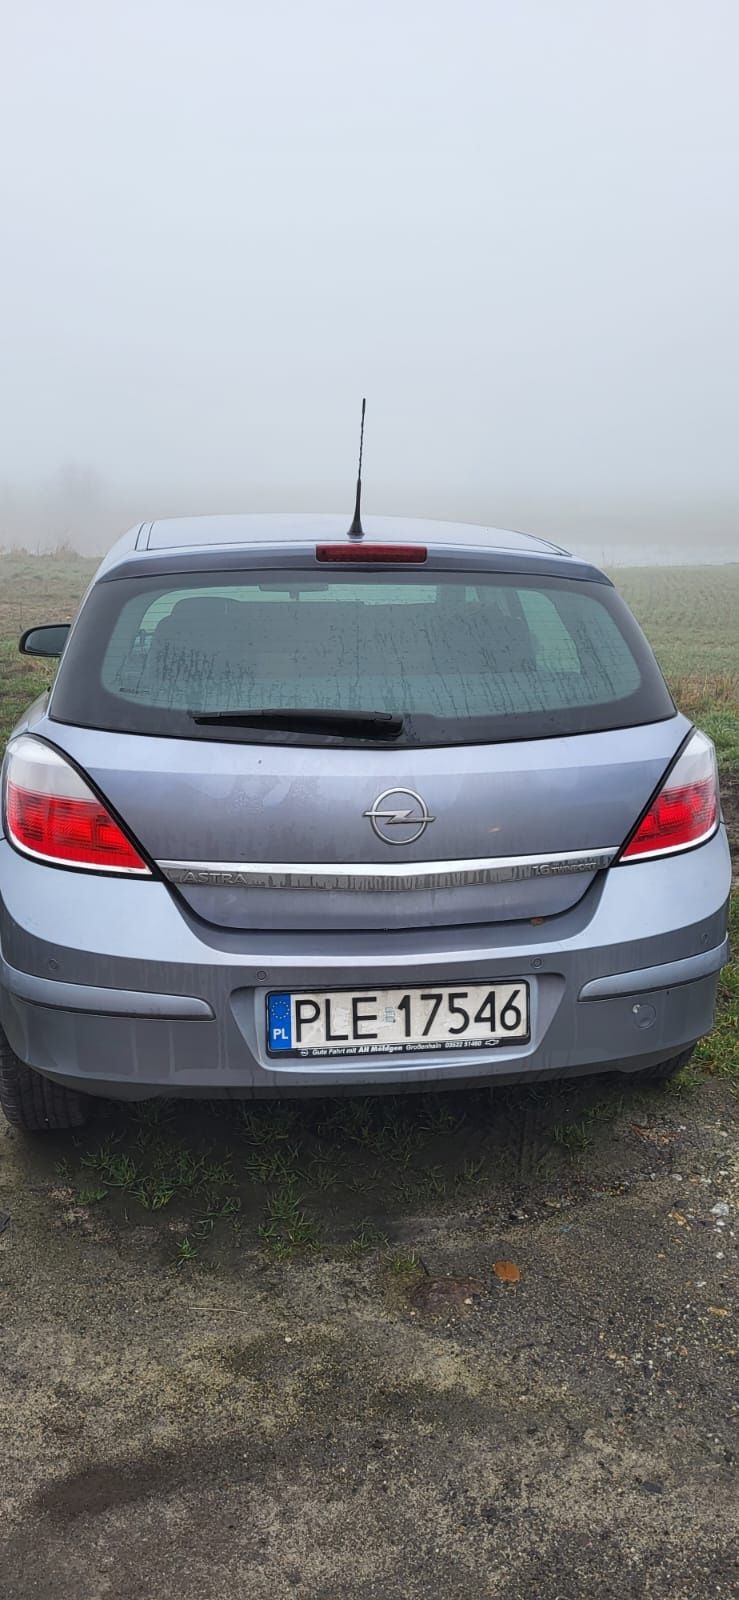 Opel Astra 2004 1.6 benzyna automat przebieg 125tys